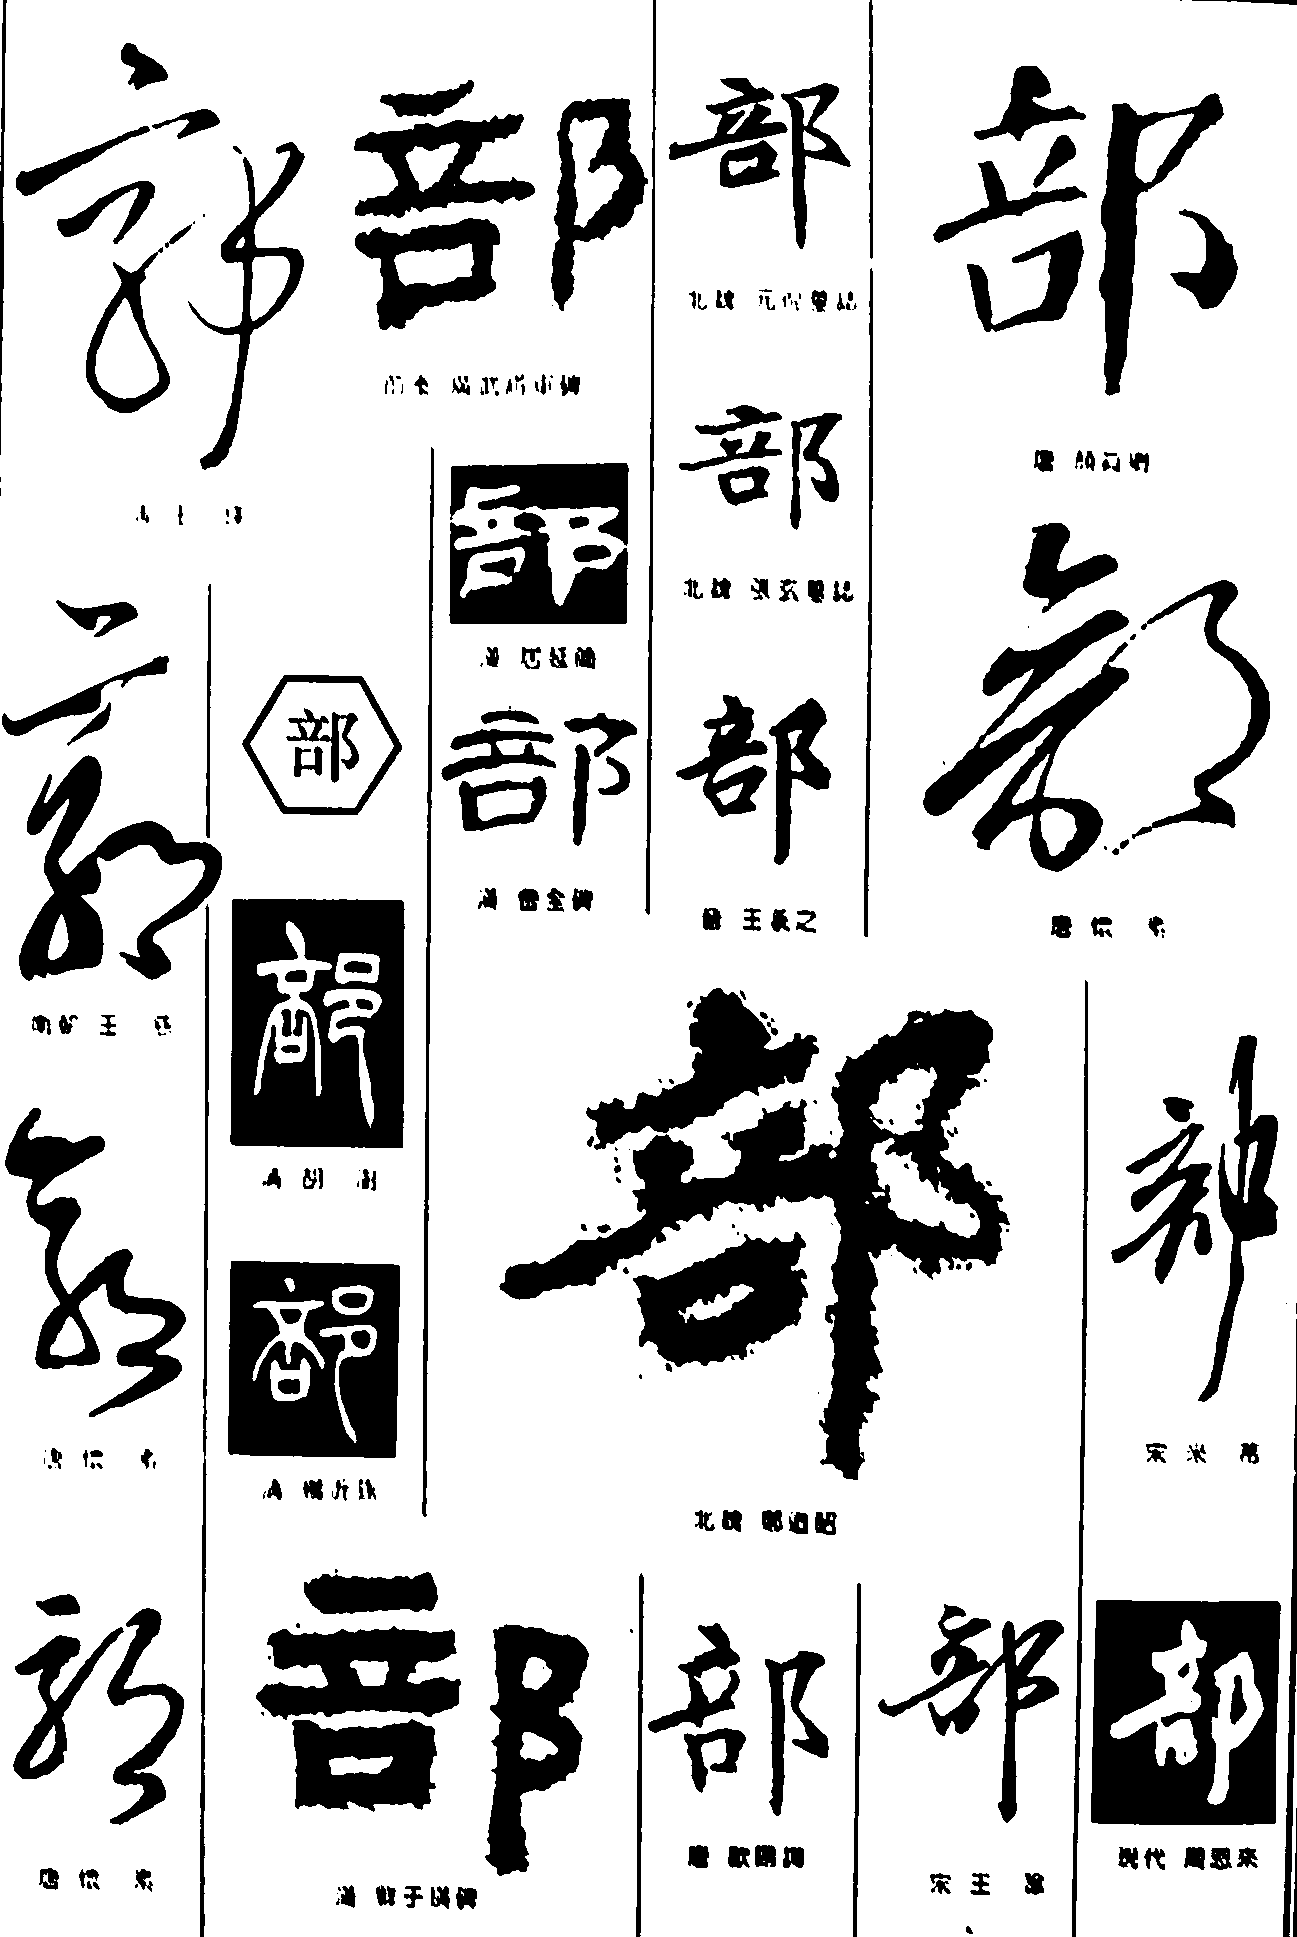 郭部 艺术字 毛笔字 书法字 繁体 标志设计